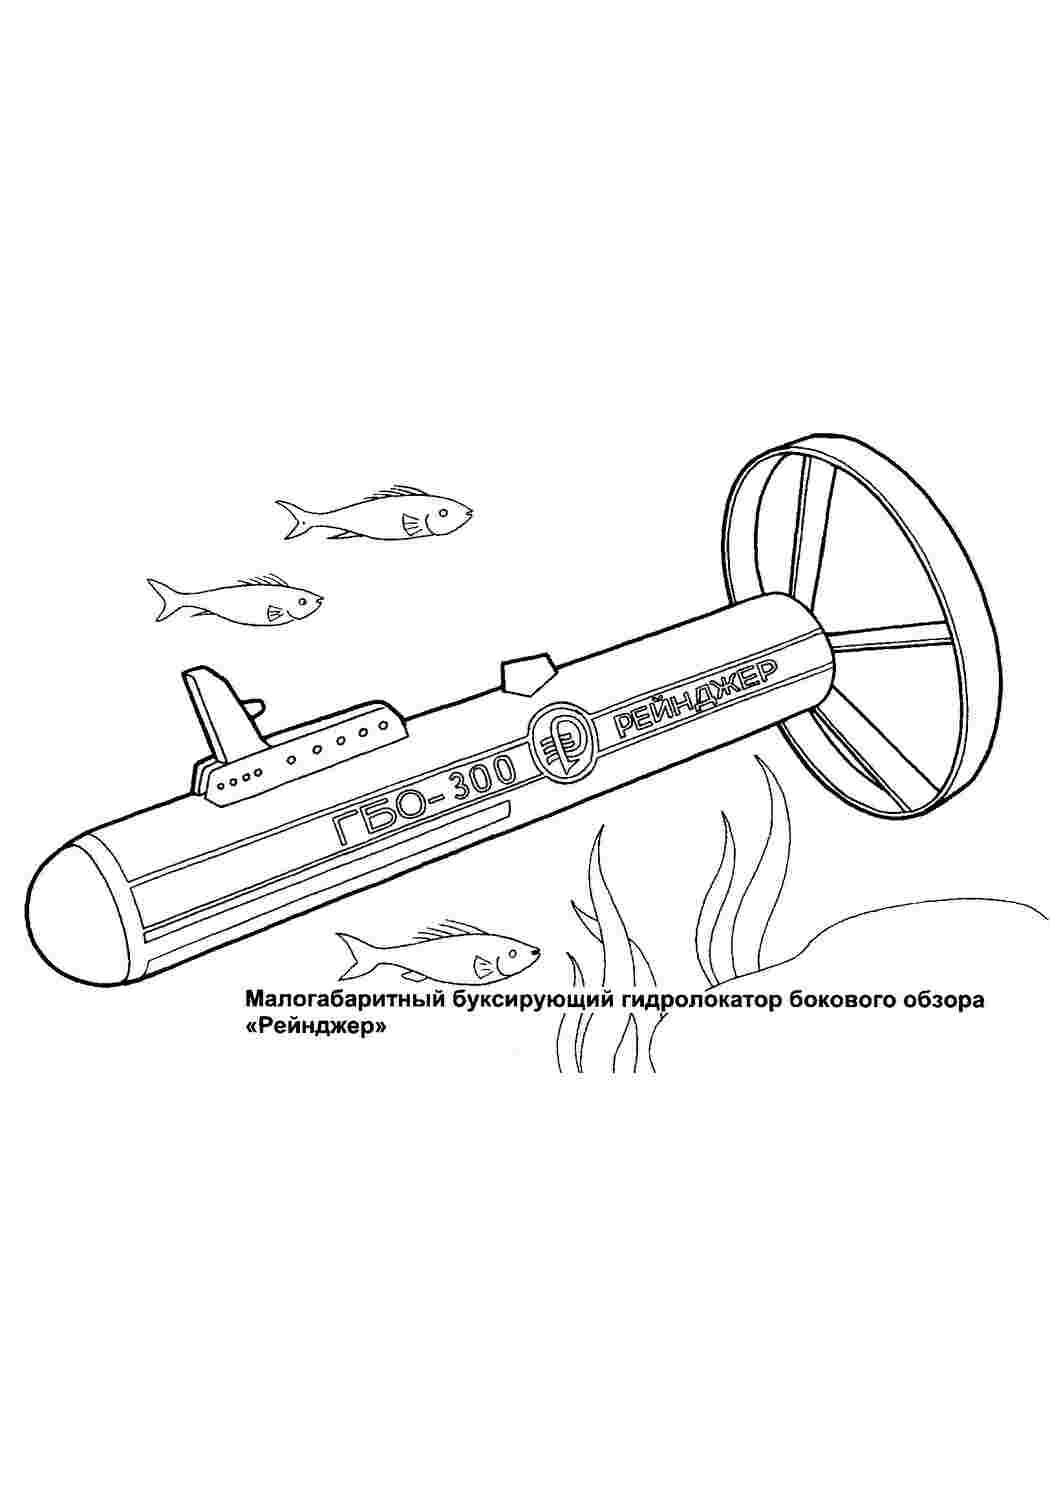 Раскраски Малогабаритный буксирующий гидролокатор бокового обзора рейнджер, подводные лодки Малогабаритный буксирующий гидролокатор бокового обзора рейнджер, подводные лодки  Раскраски скачать онлайн